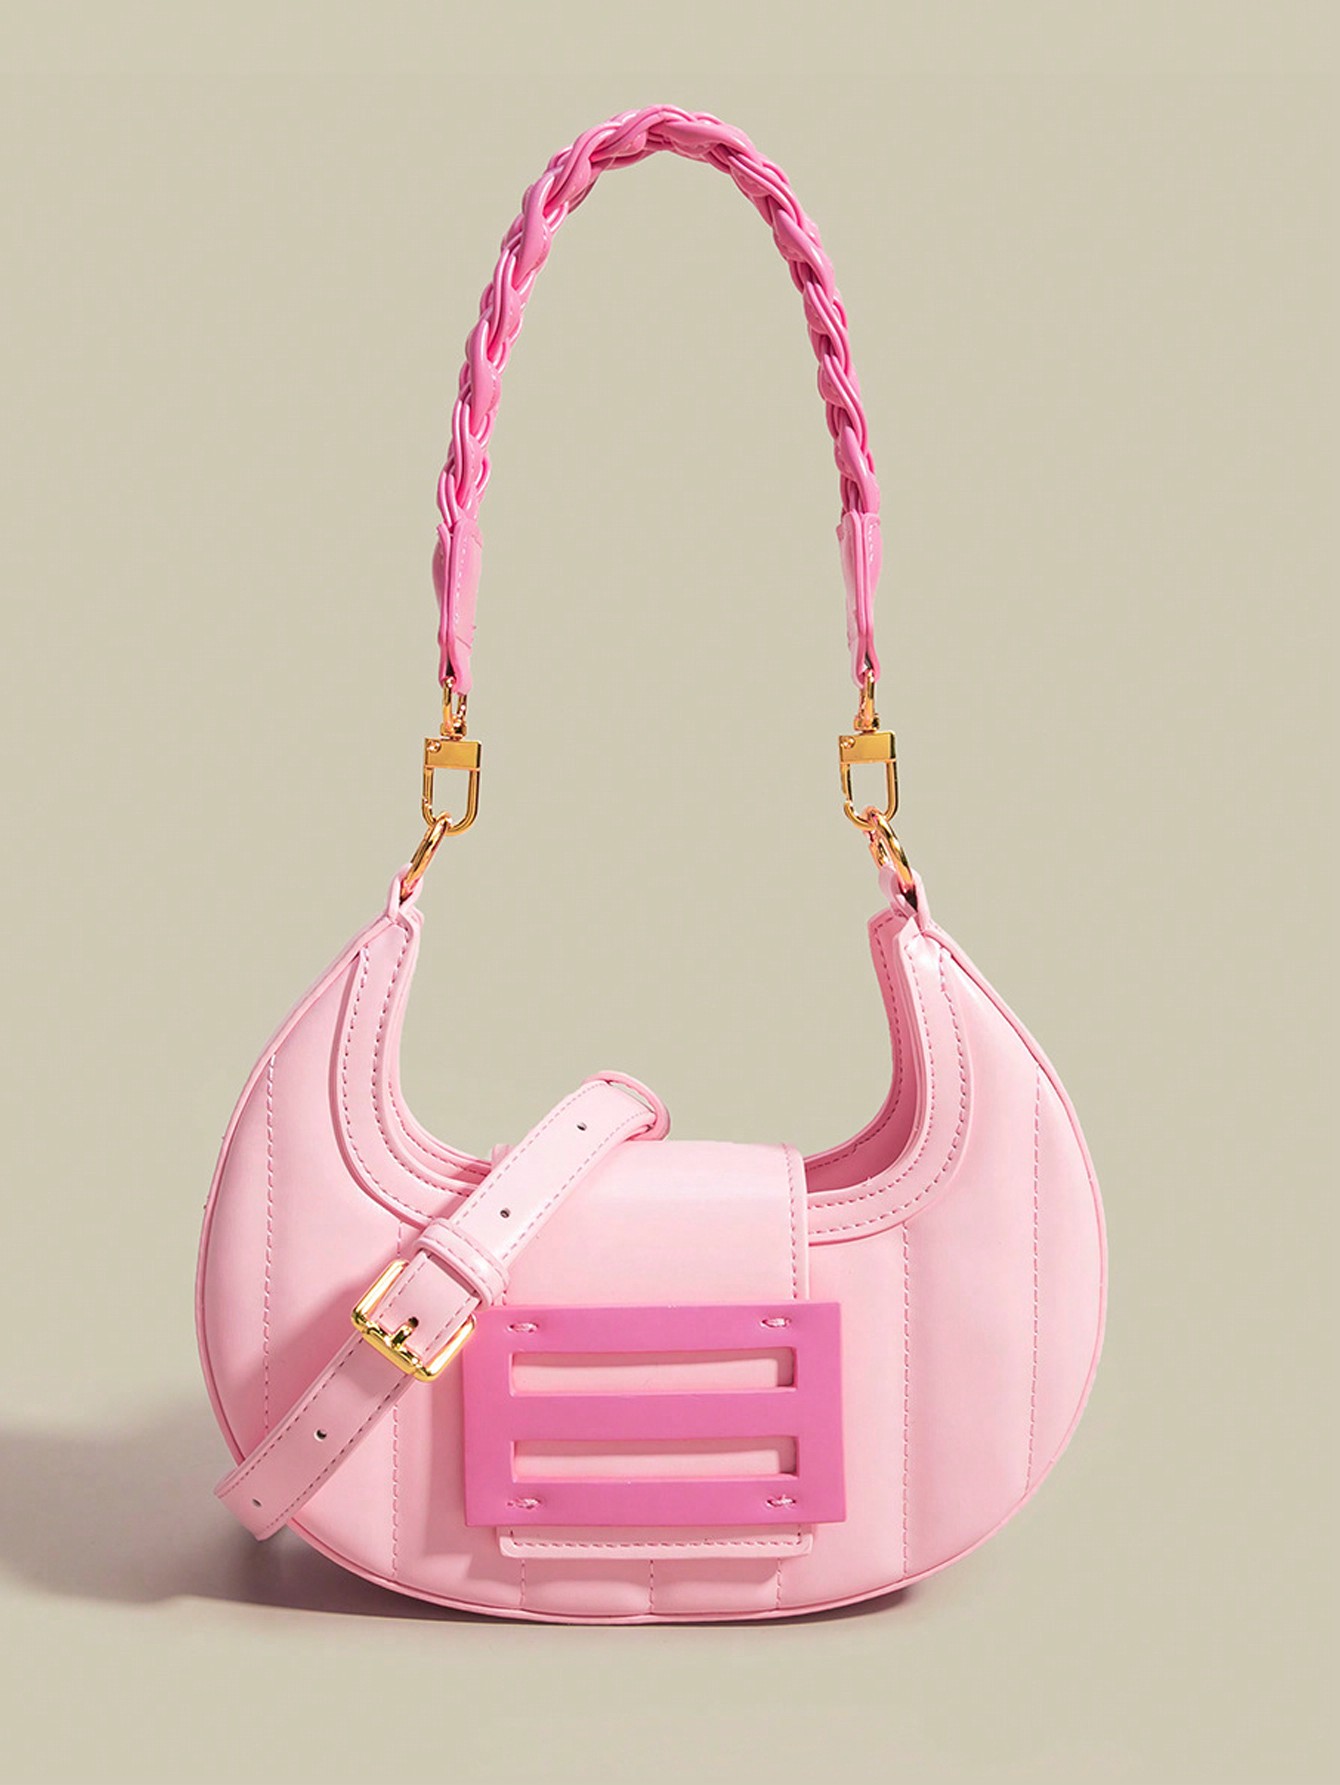 женская сумка хобо из эко кожи и замши 3081 80а хаки 125870 Модная веганская сумка-хобо с розовым полумесяцем, розовый